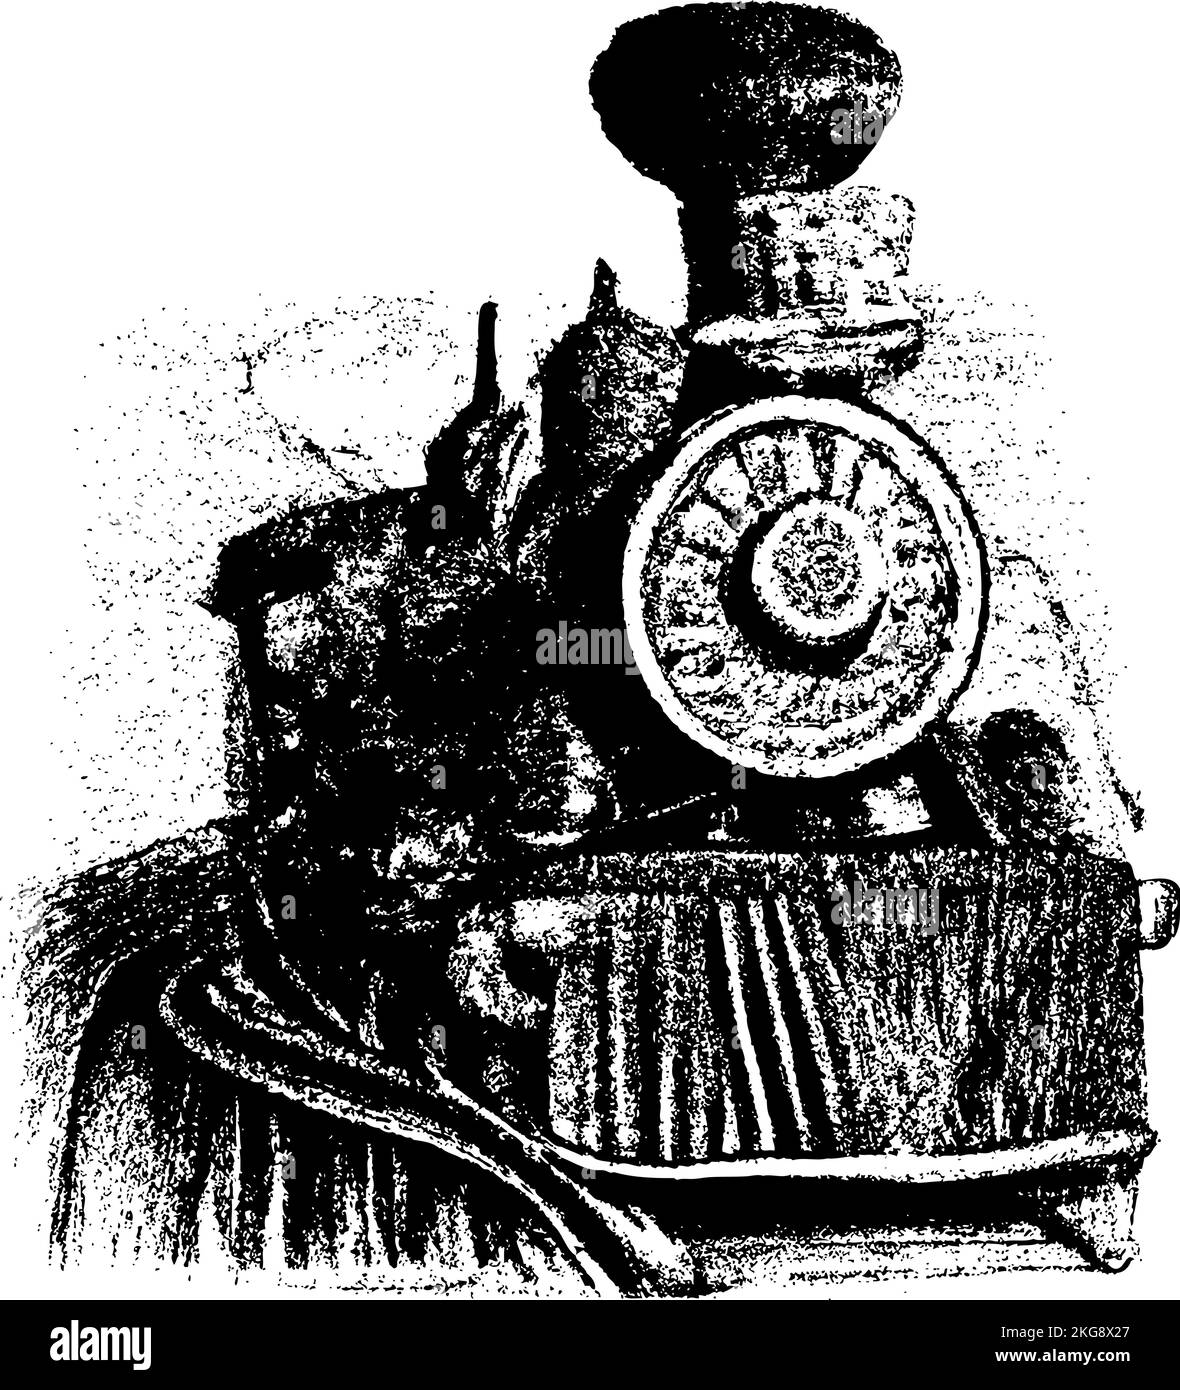 Vue avant d'une locomotive à vapeur 1800s illustration du transport. Dessin imaginaire fantaisie. Illustration de Vecteur